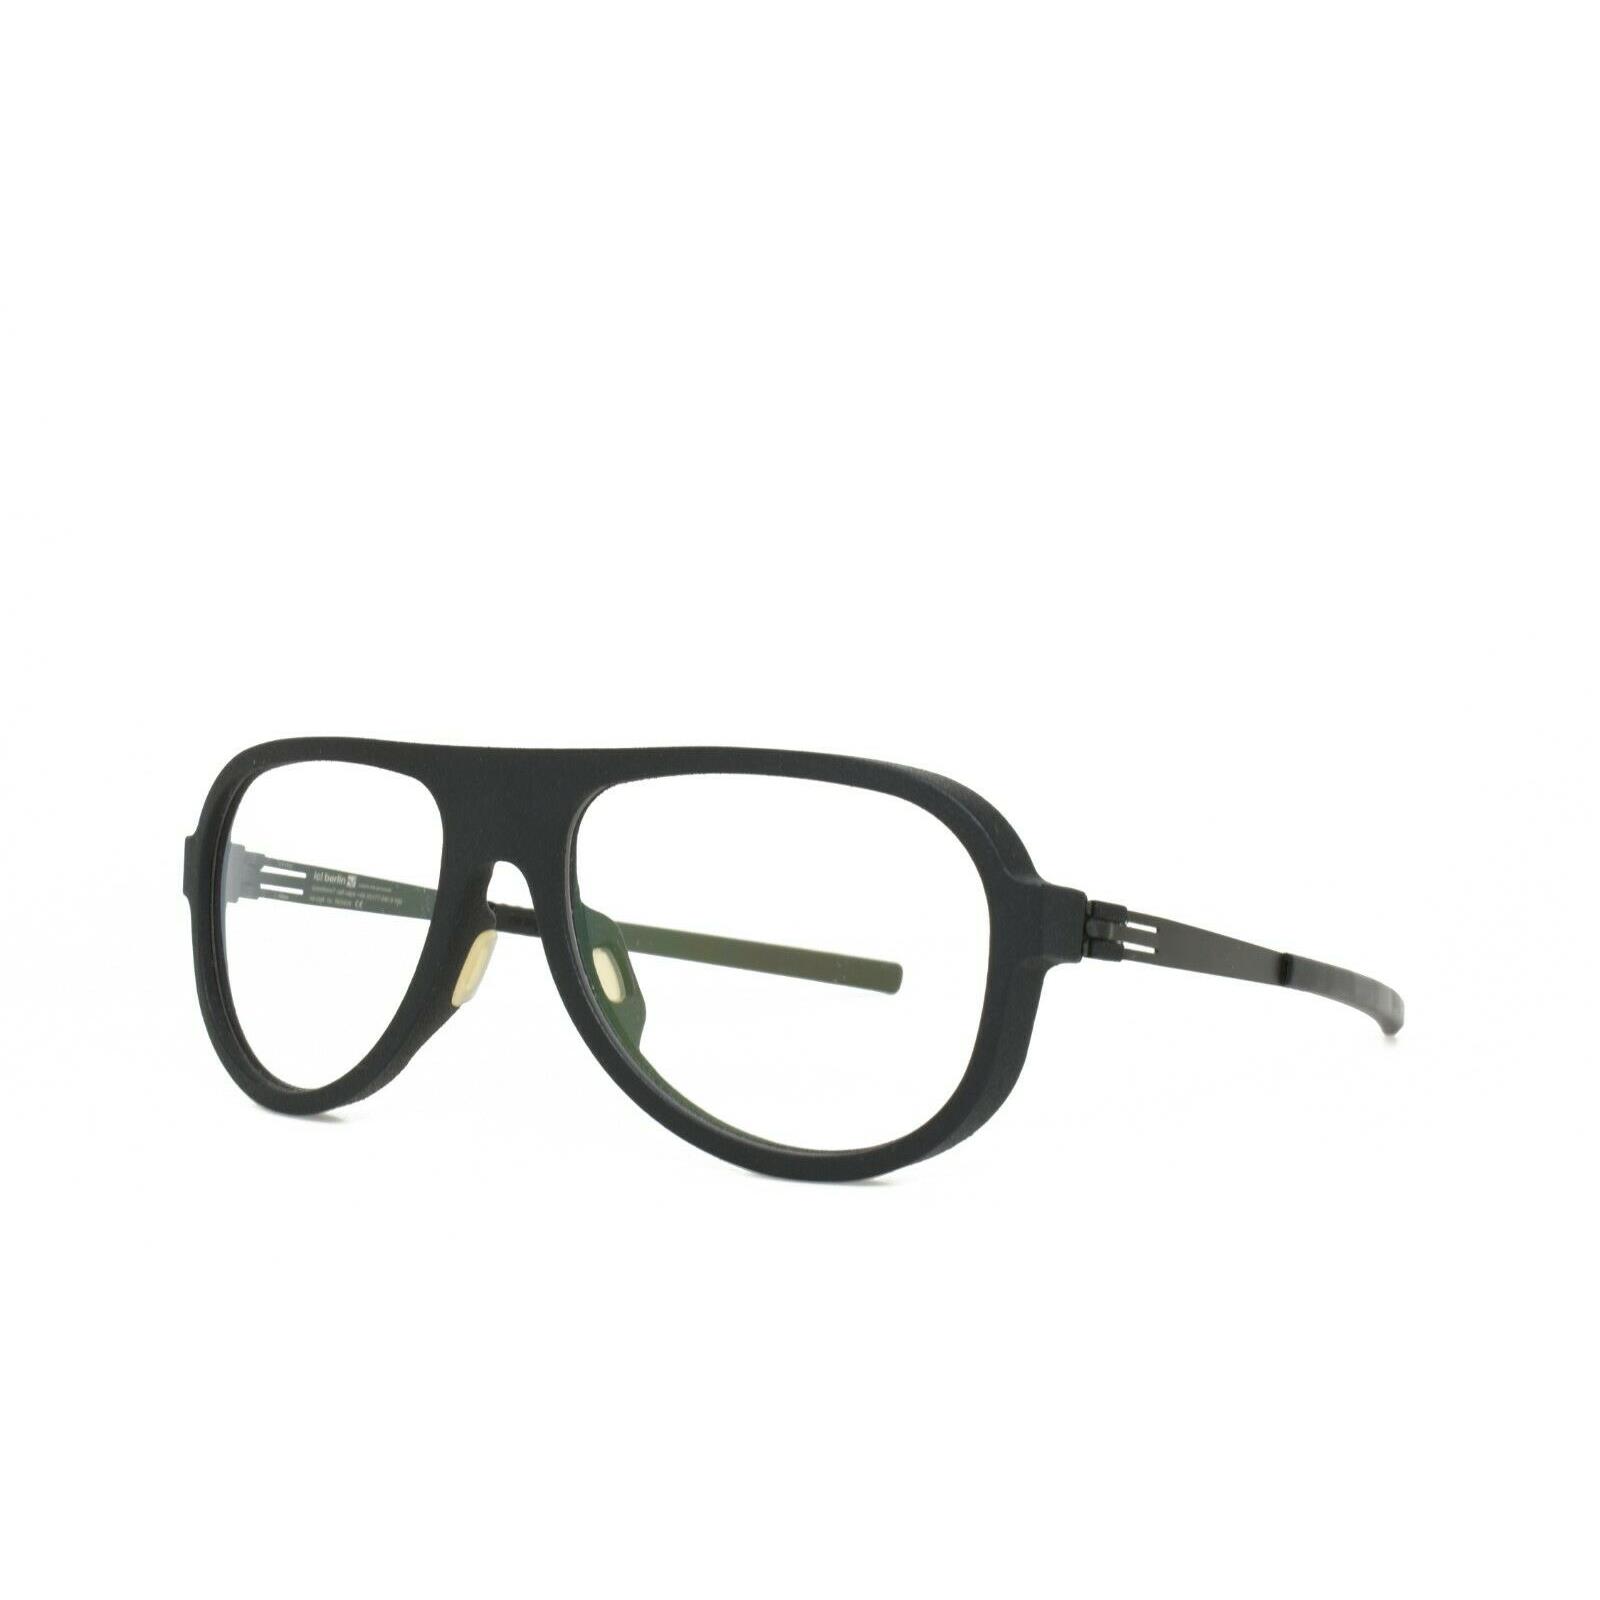 IC Berlin Eyeglasses Romer Black 53-20-145